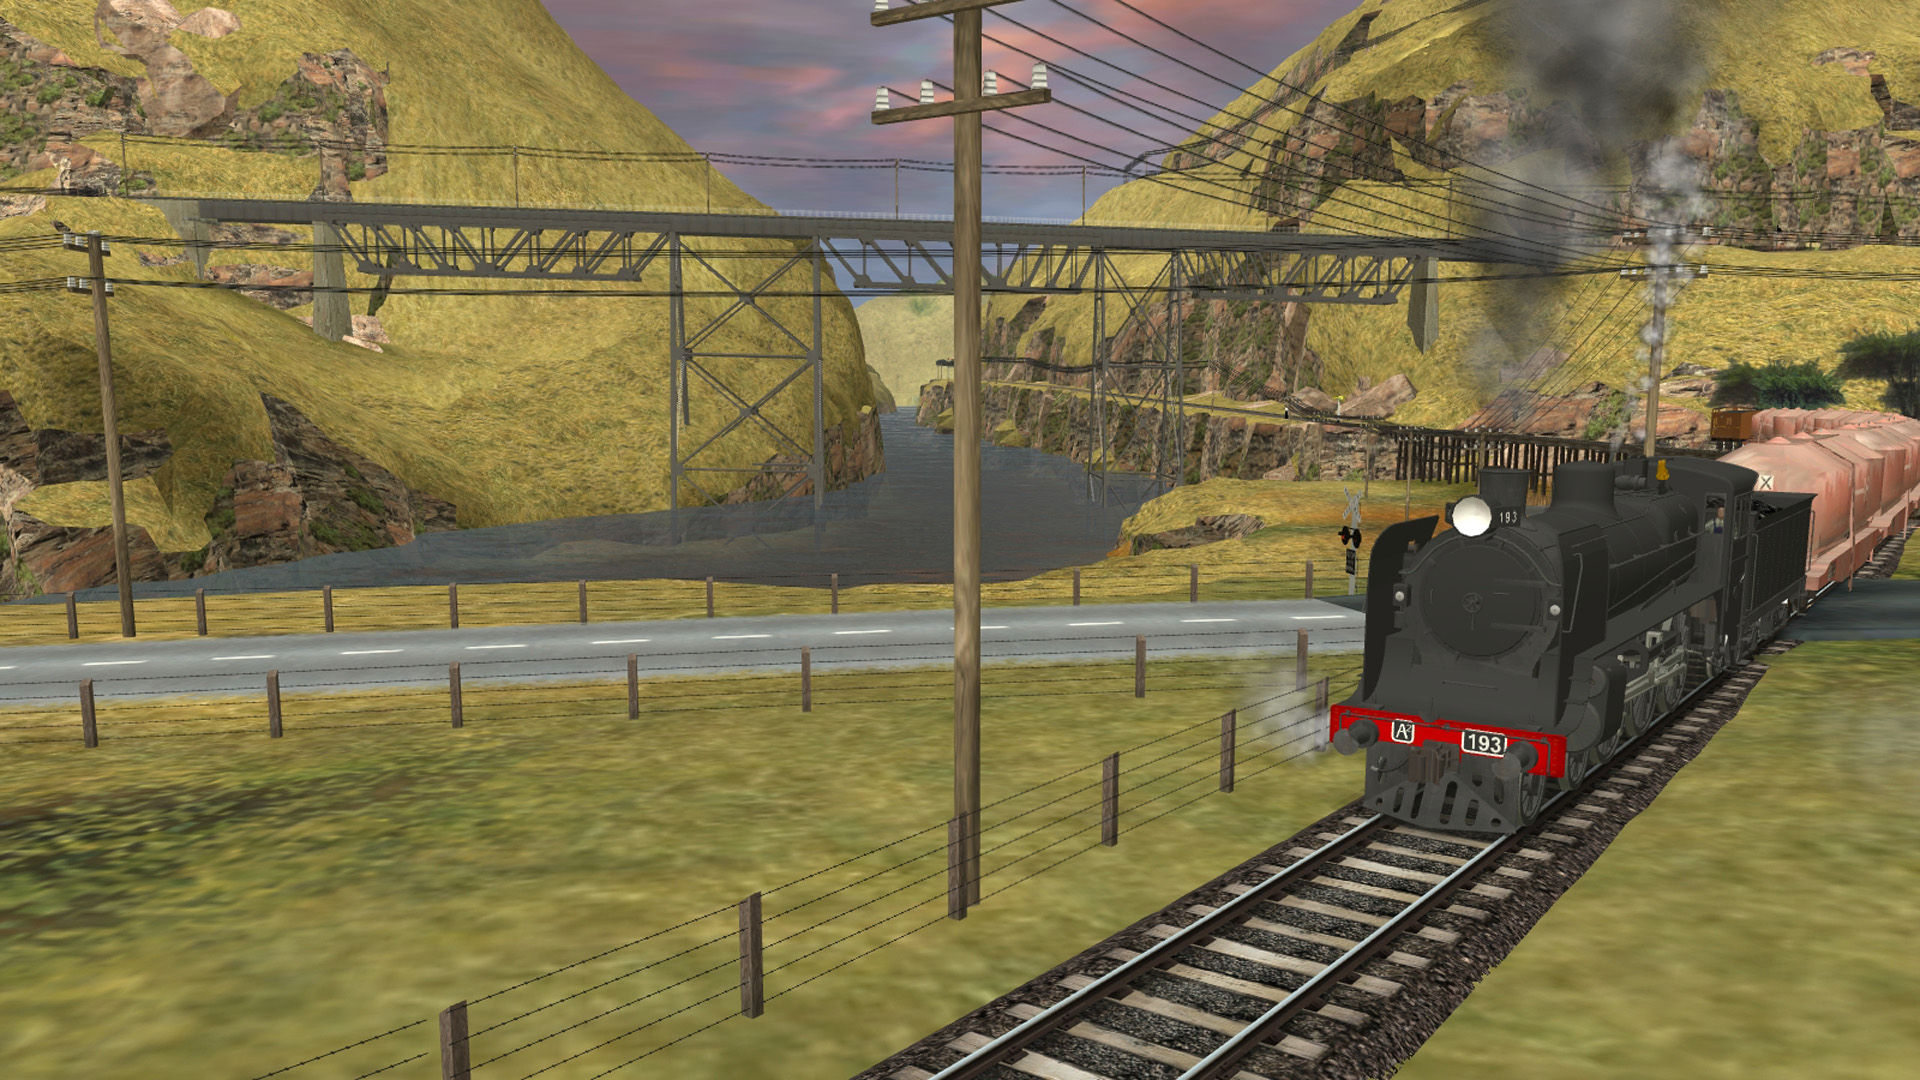 Trainz: Murchison 2. Симулятор железной дороги на ПК. .Дпл2 Trainz. Спецтехника для Trainz. Simulator 2d игры